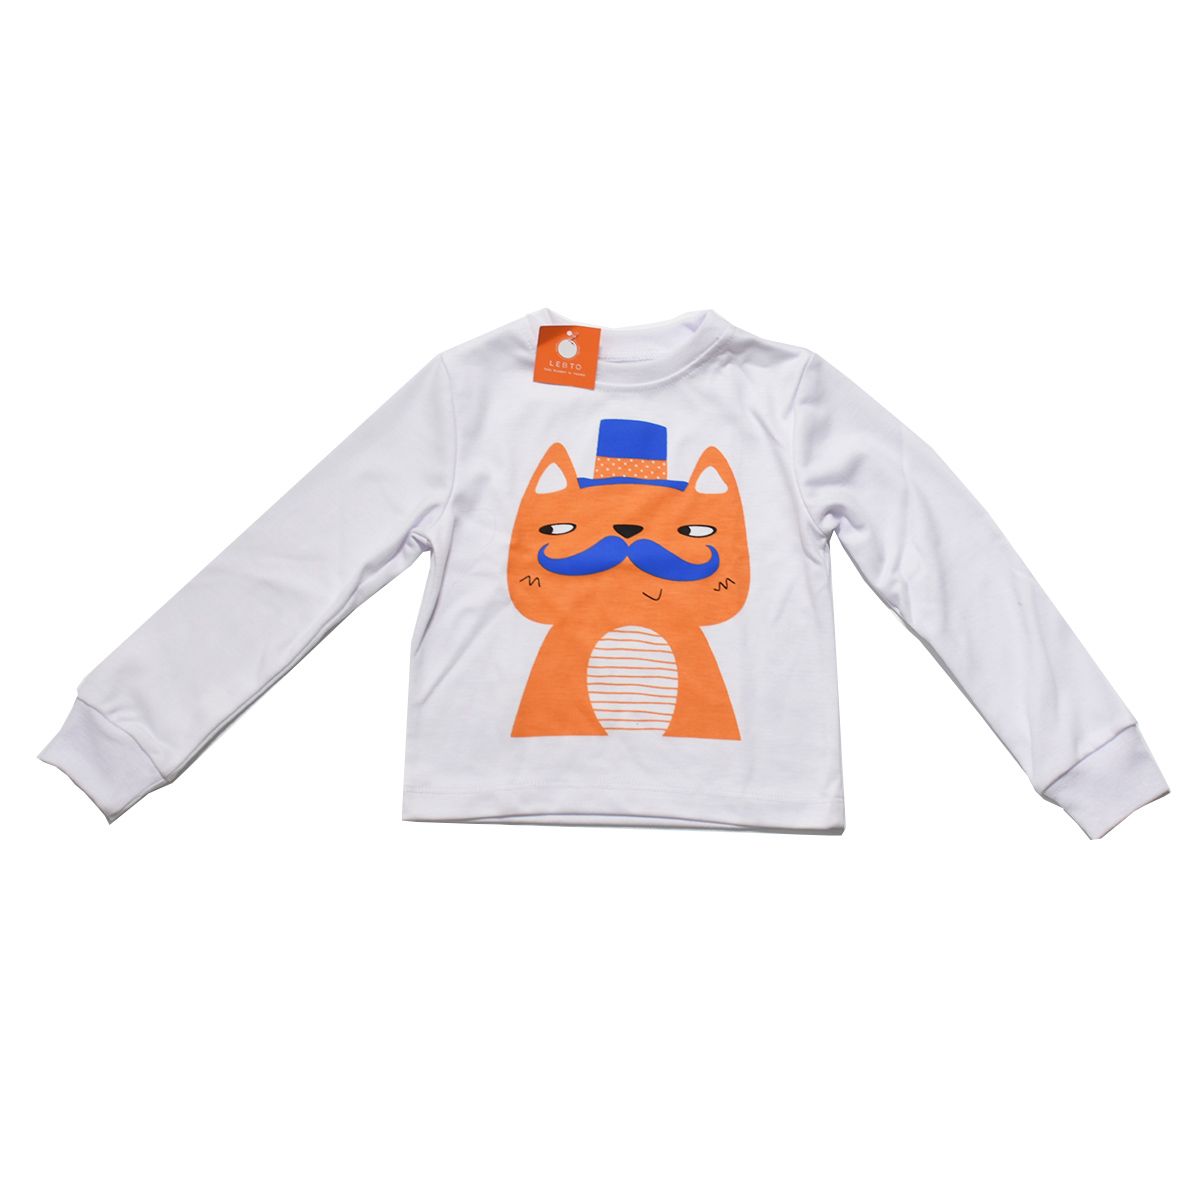 ست تی شرت و شلوار پسرانه لبتو مدل Mustache کد 5241 -  - 2